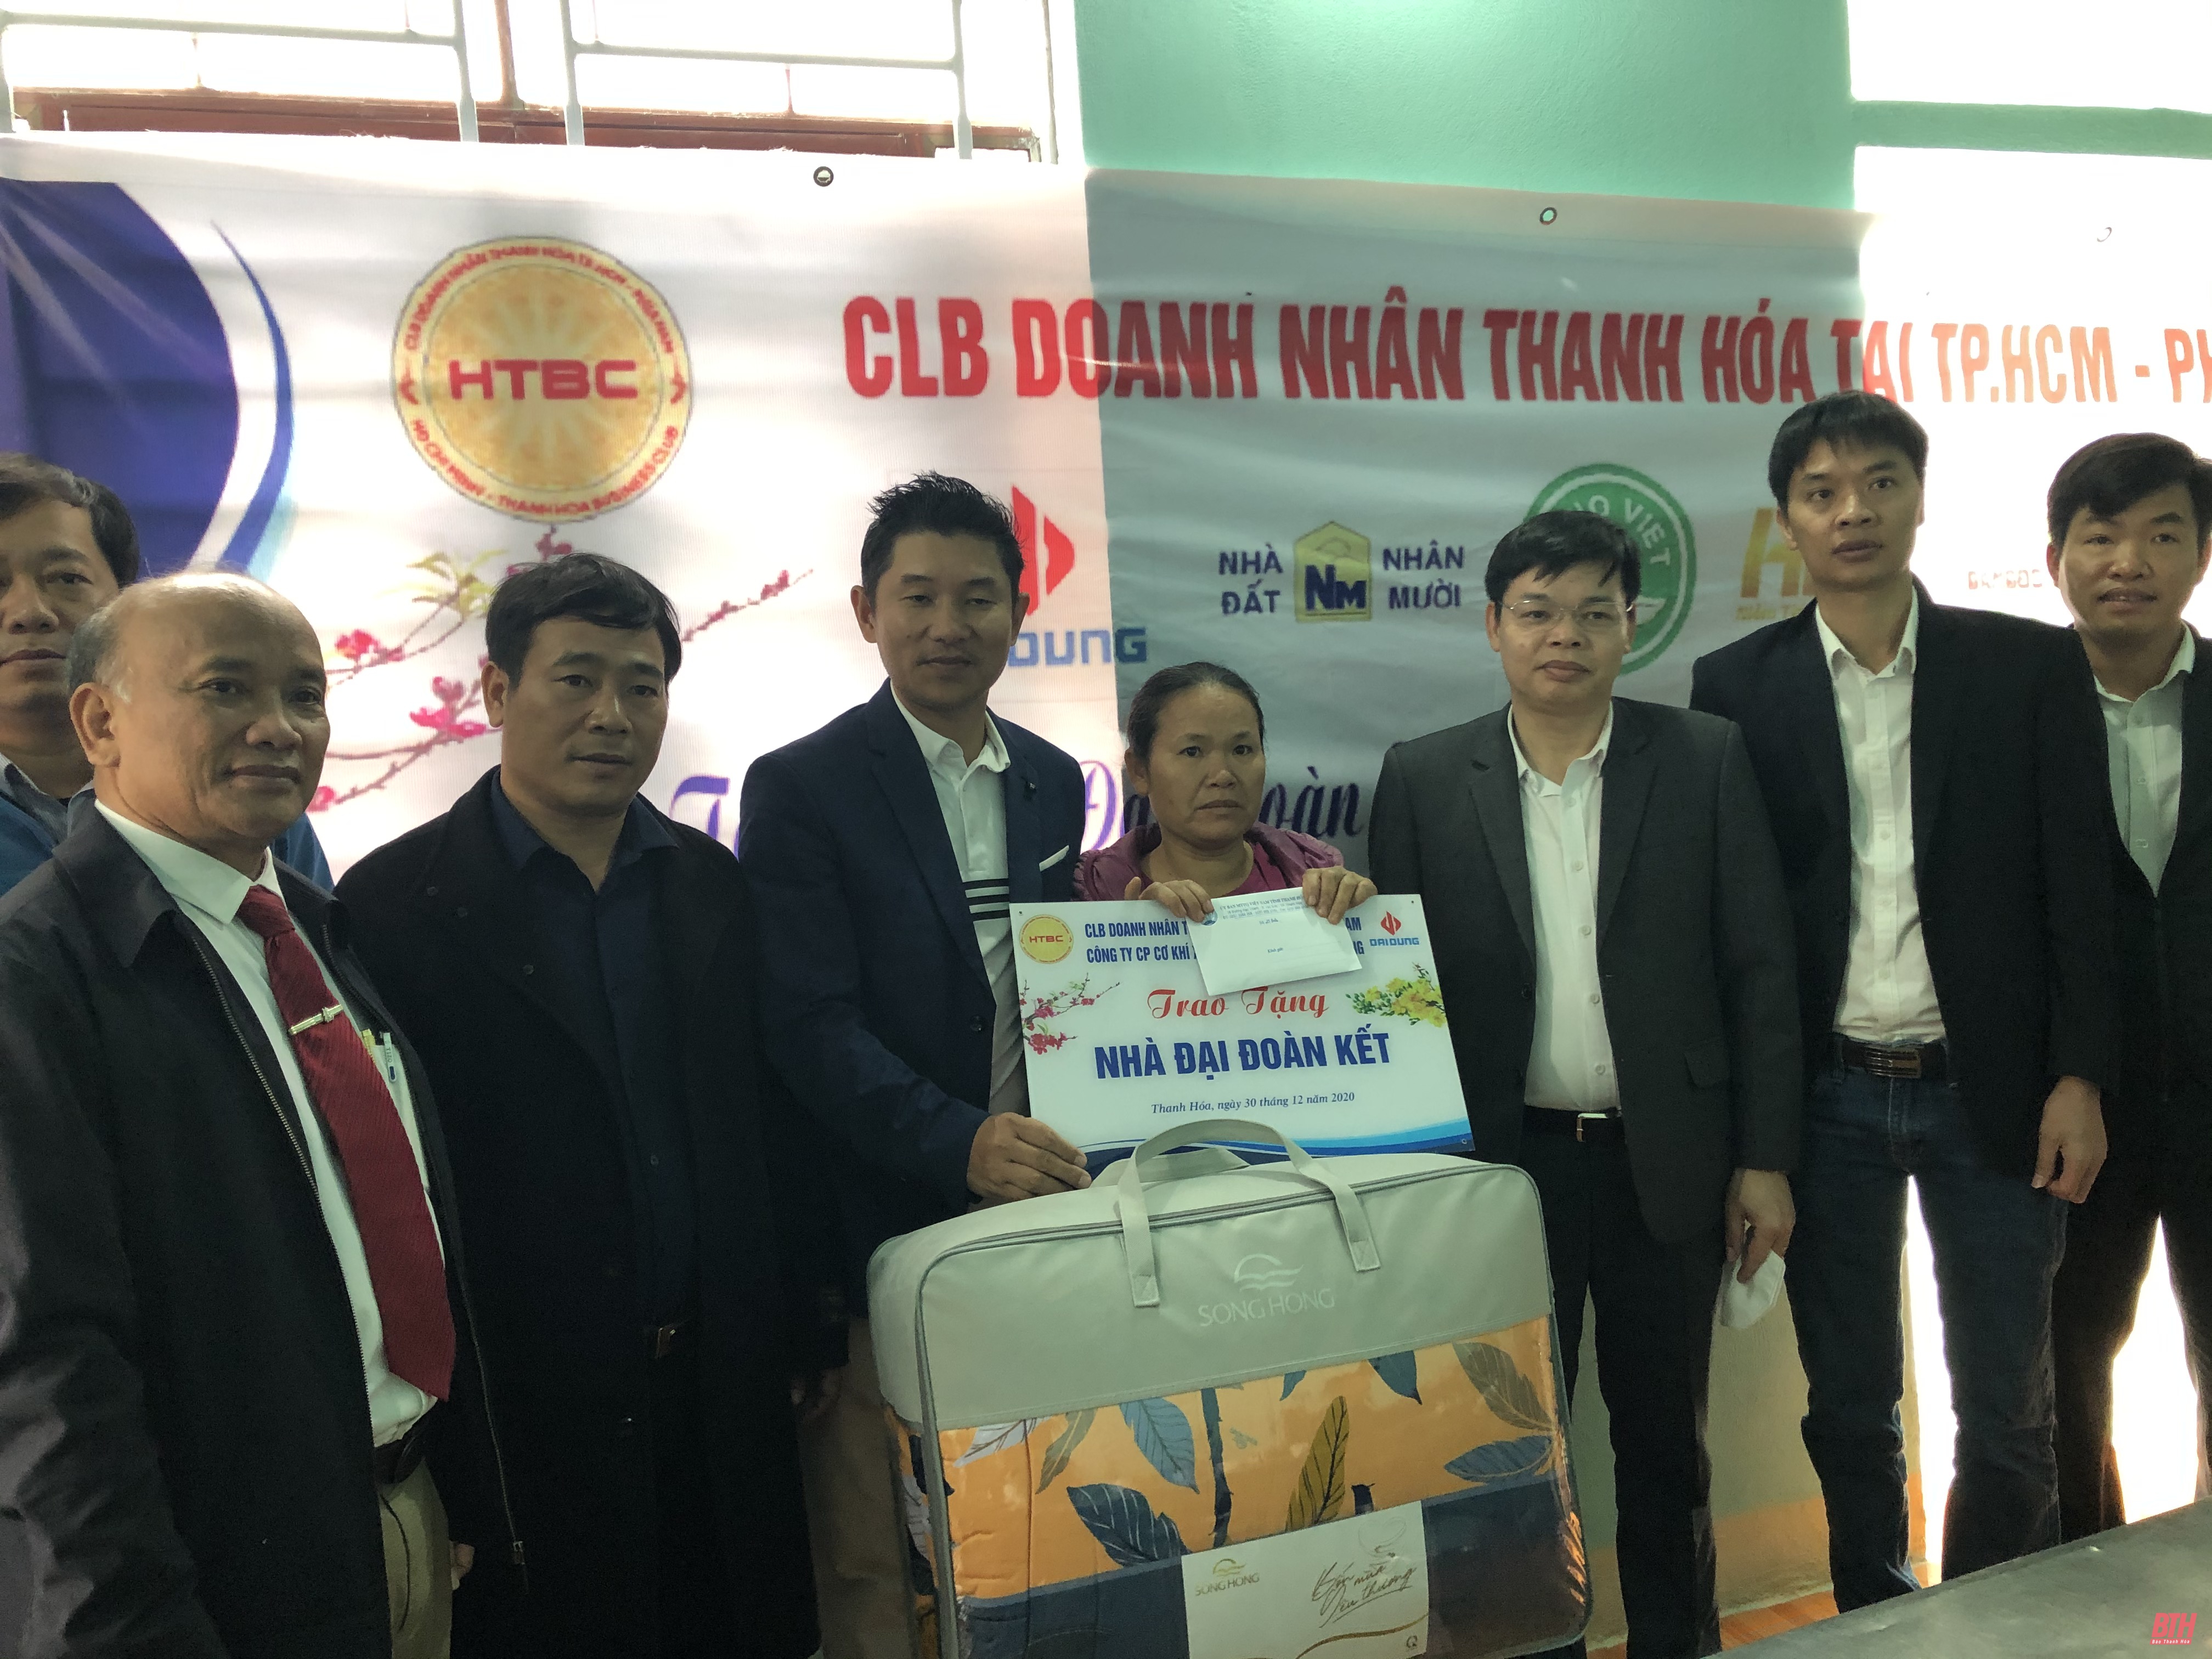 Câu lạc bộ Doanh nhân Thanh Hóa tại TP Hồ Chí Minh - phía Nam trao nhà đại đoàn kết cho hộ nghèo tại quê nhà